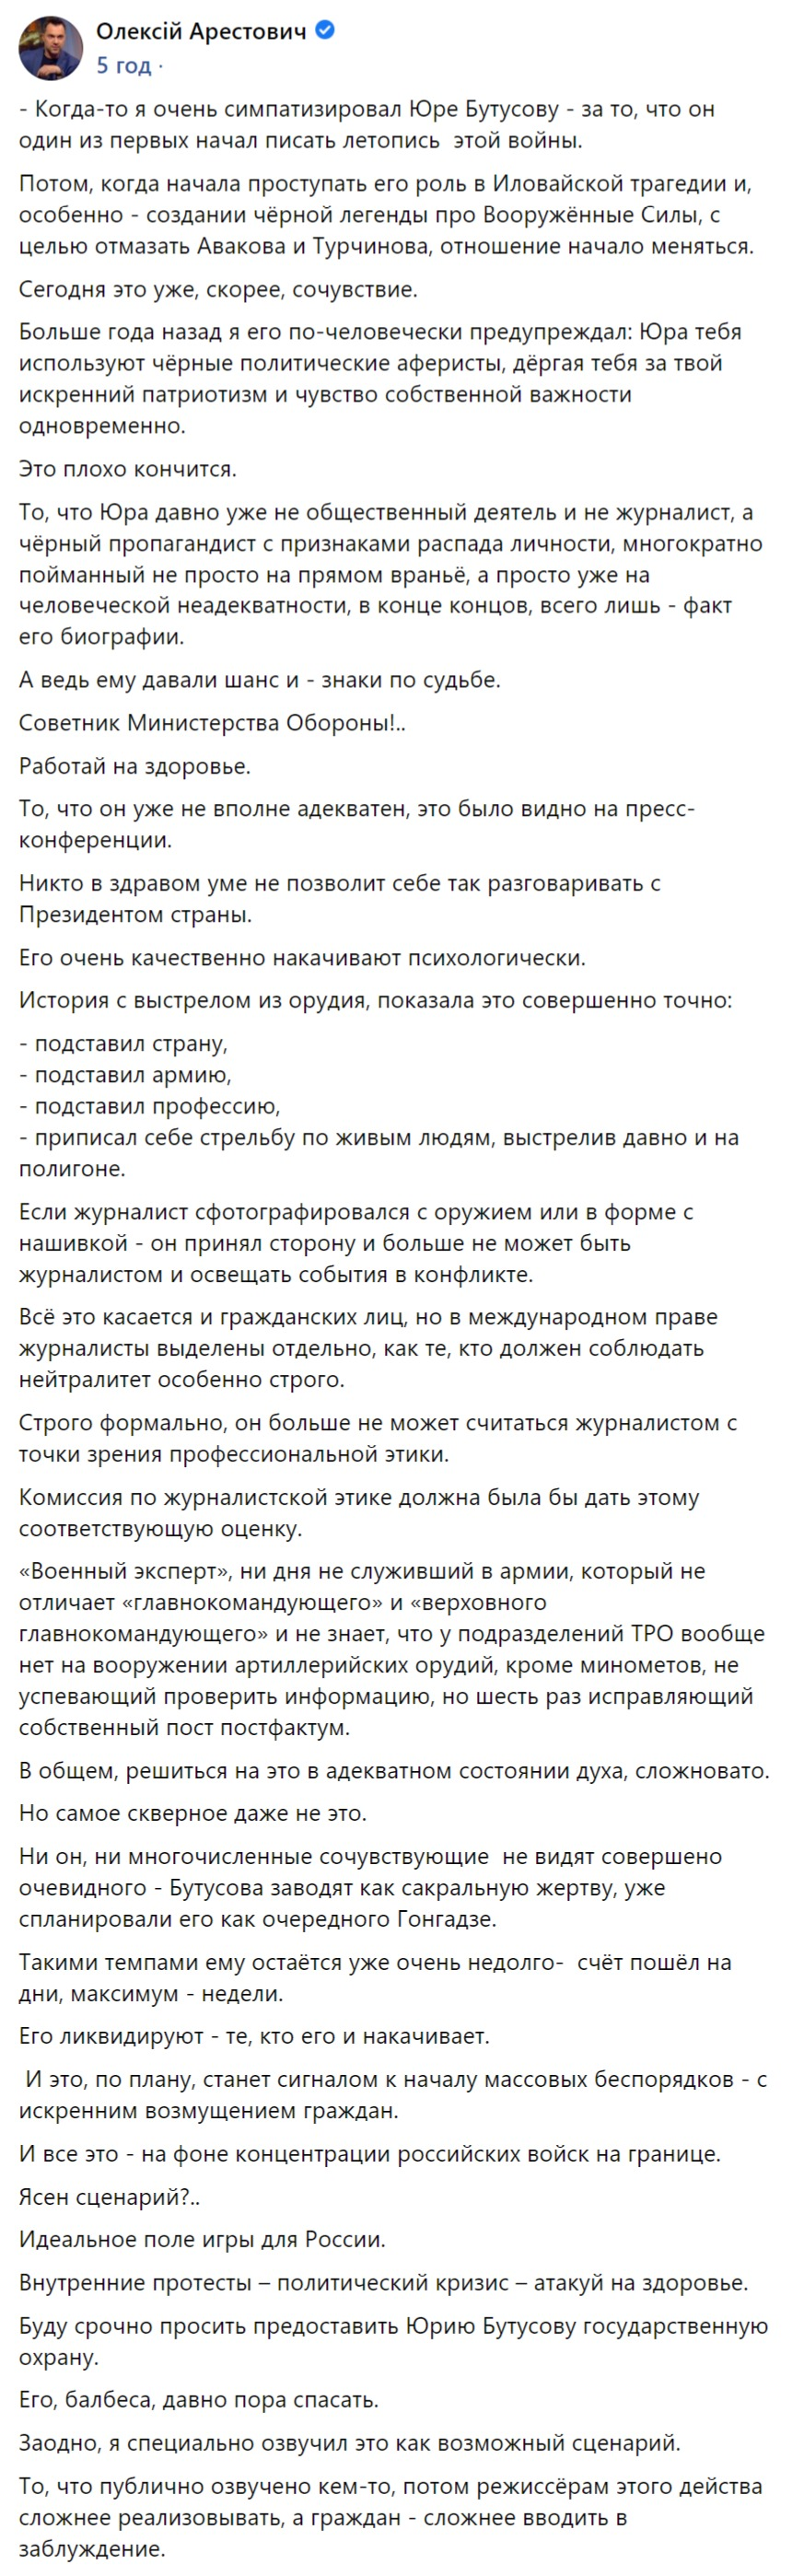 Алексей Арестович написал, что Юрия Бутусова могут ликвидировать